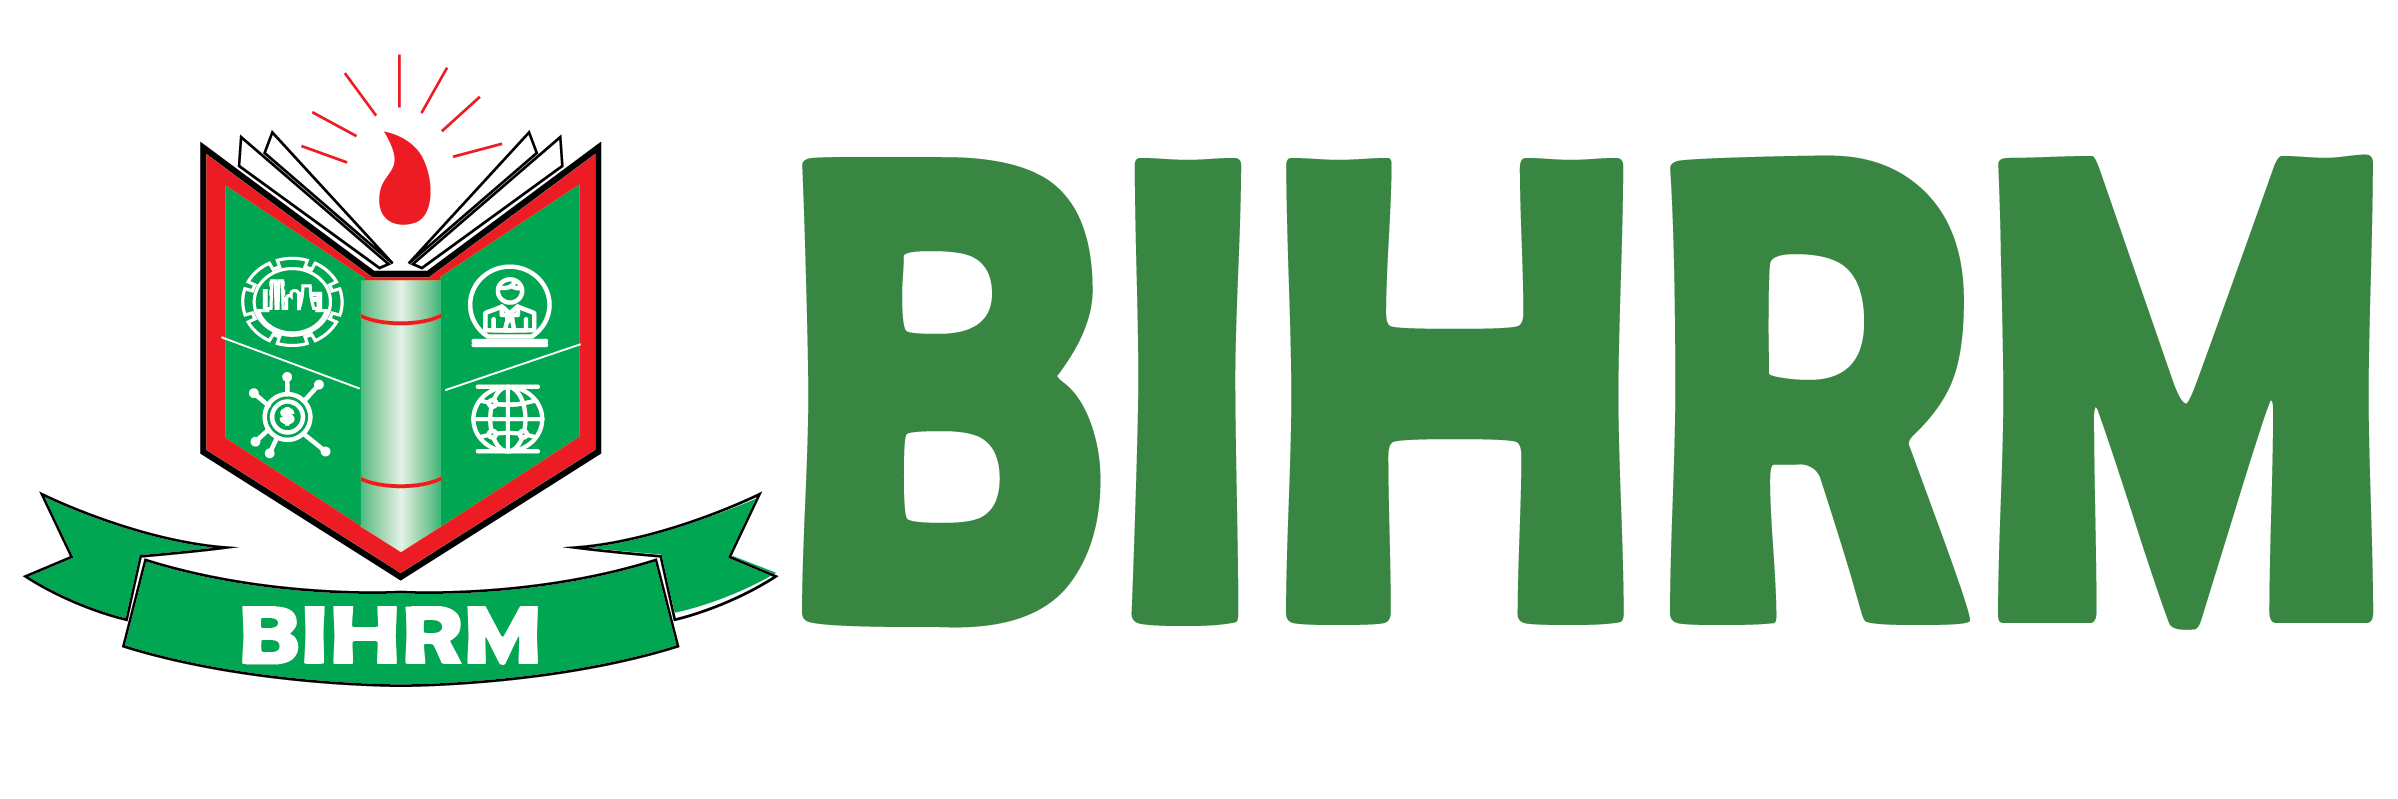 BIHRM: BIHRM supply chain